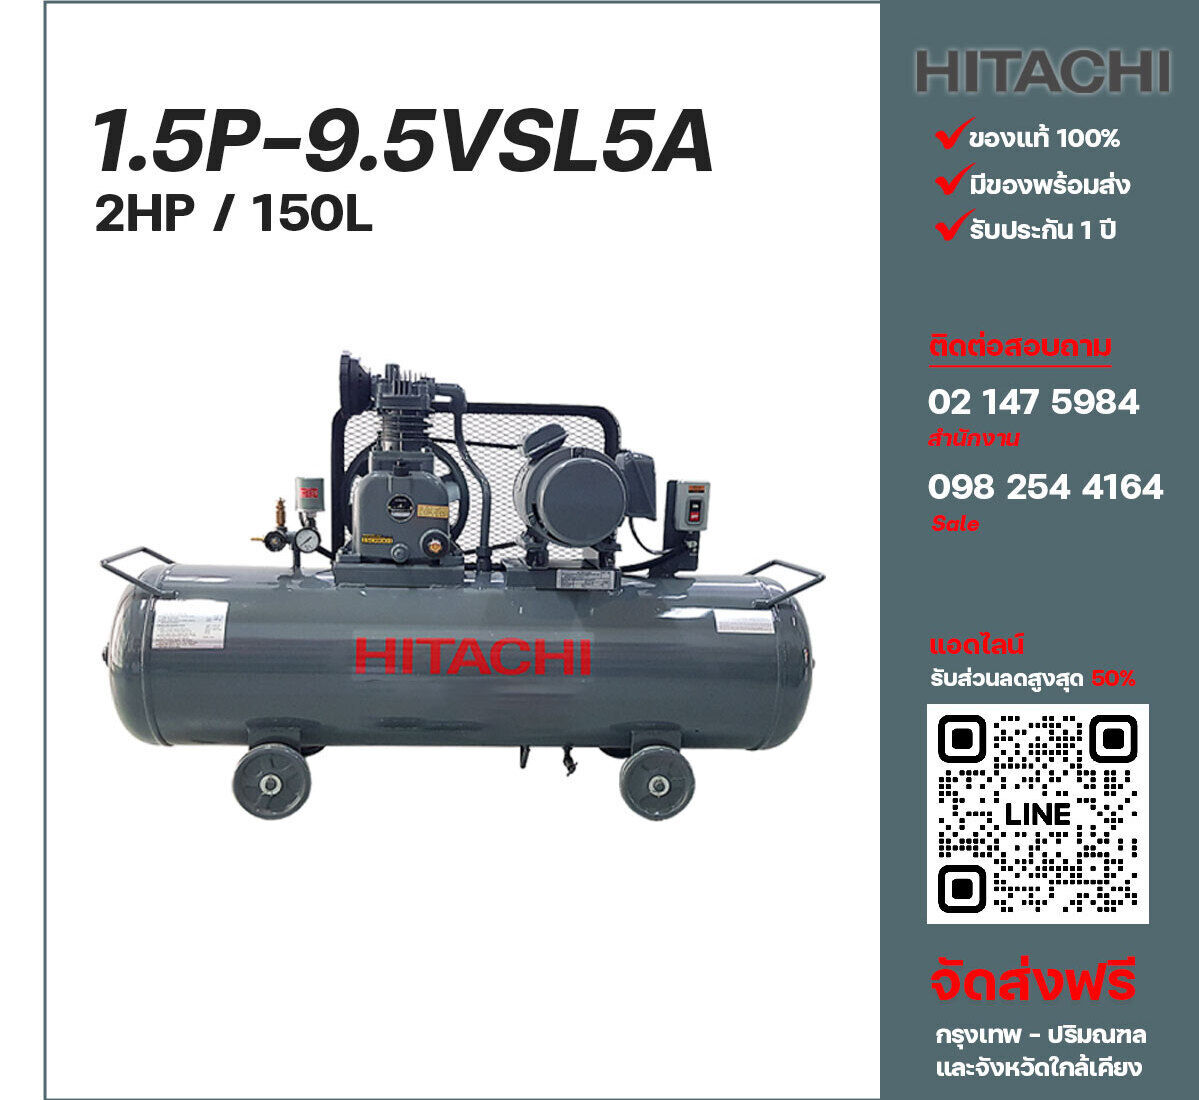 ปั๊มลมฮิตาชิ HITACHI รุ่นใช้น้ำมัน 1.5P-9.5VSL5A220V ปั๊มลมลูกสูบ ขนาด 1 สูบ 2 แรงม้า 150 ลิตร Hitachi พร้อมมอเตอร์ Hitachi ไฟ 220V ส่งฟรี กรุงเทพฯ-ปริมณฑล รับประกัน 1 ปี